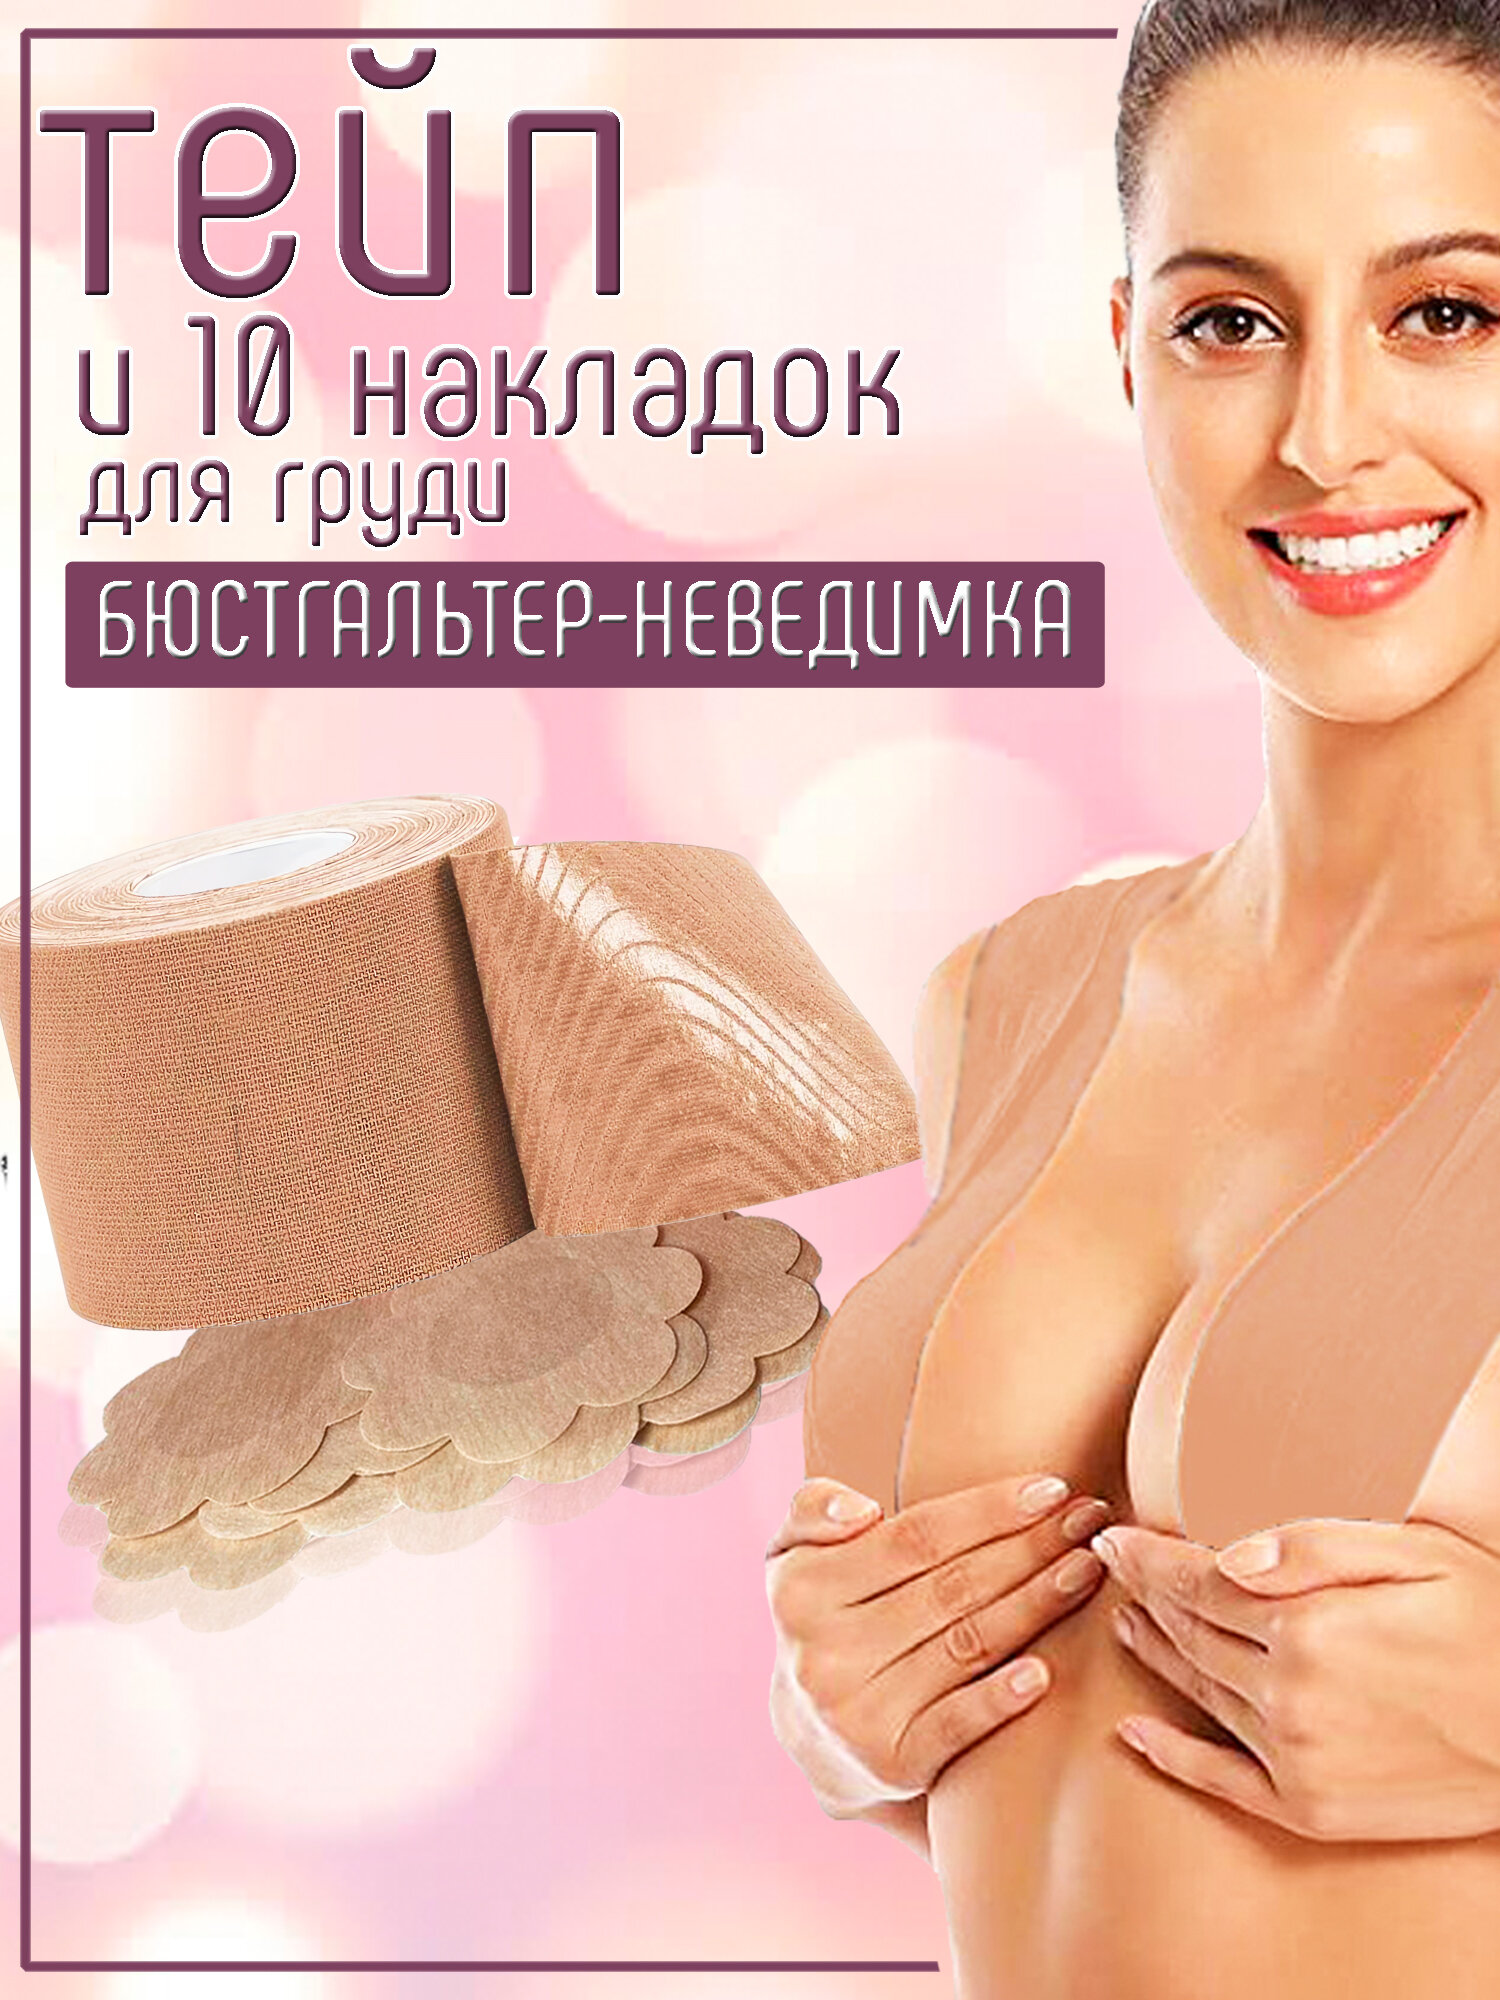 Тейп для тела, груди и лица кинезио и стикини накладки на грудь